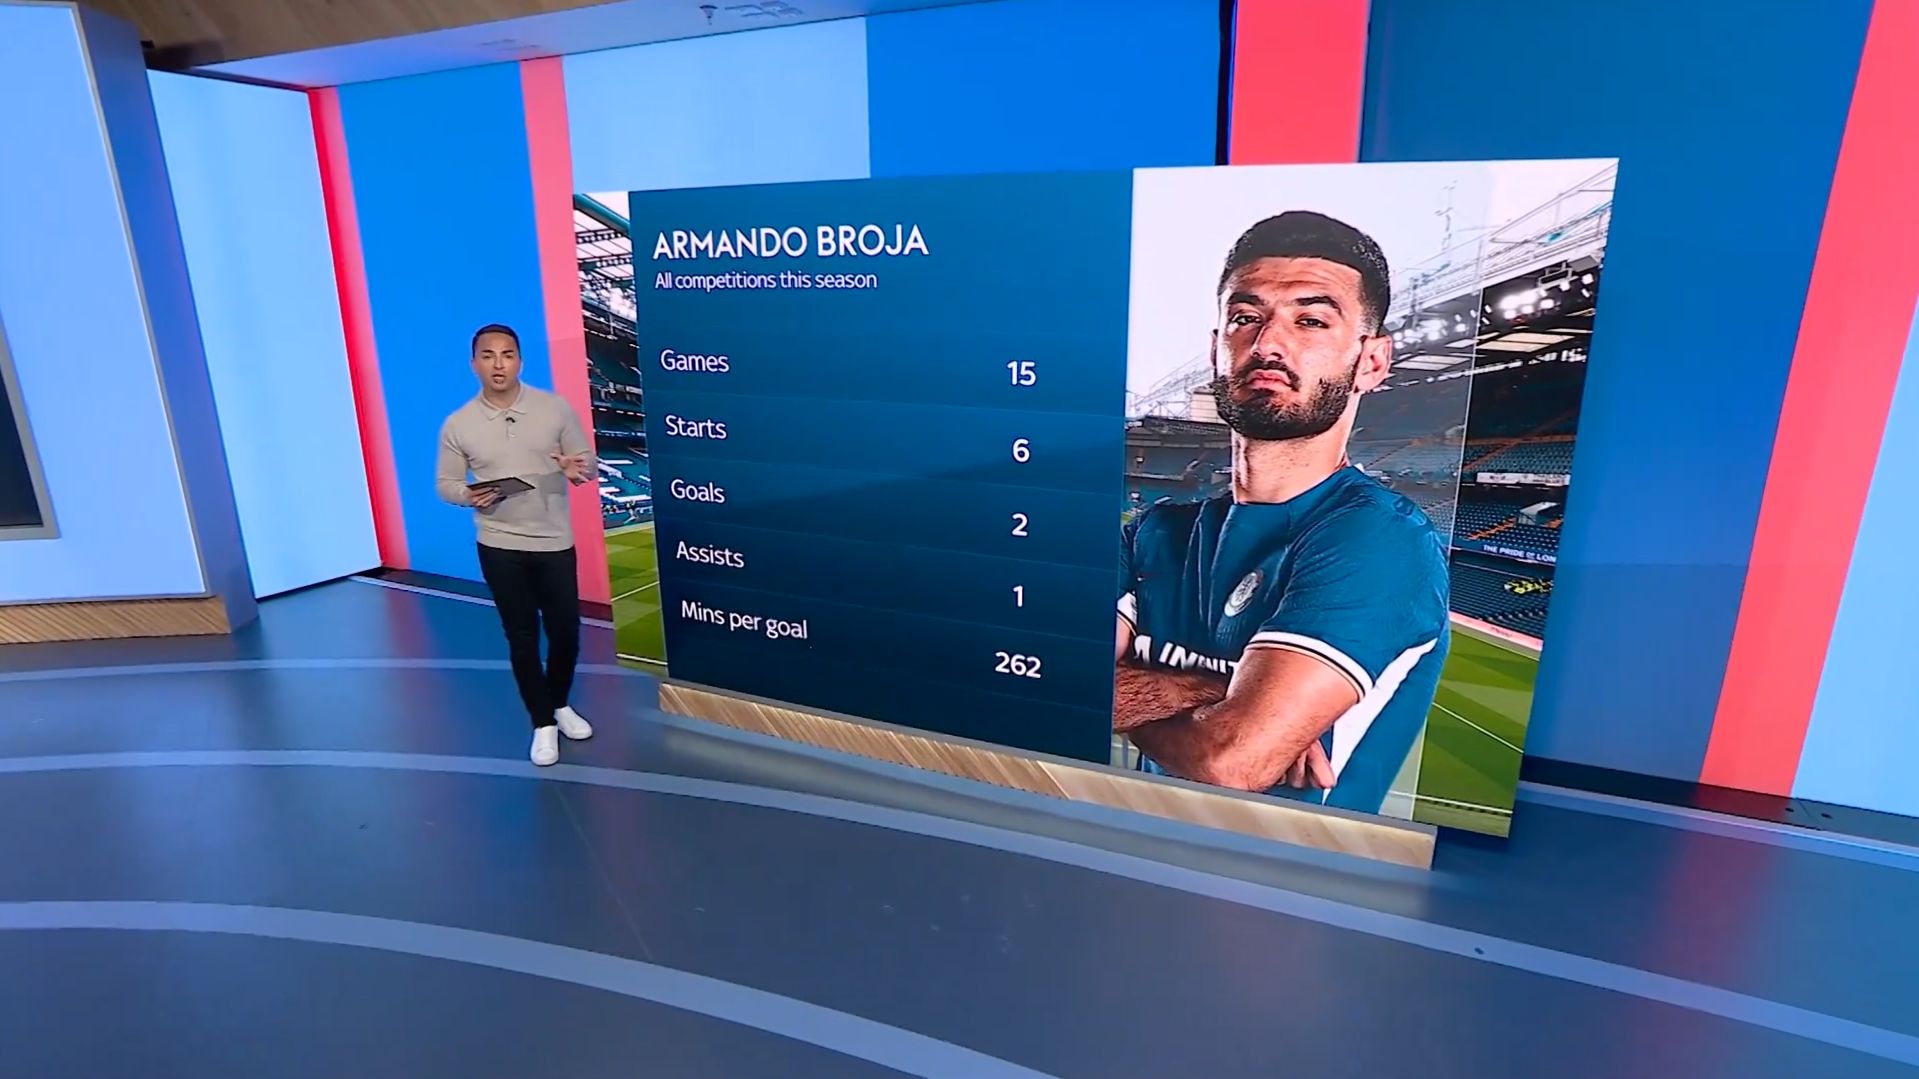 Armando Broja's season stats.